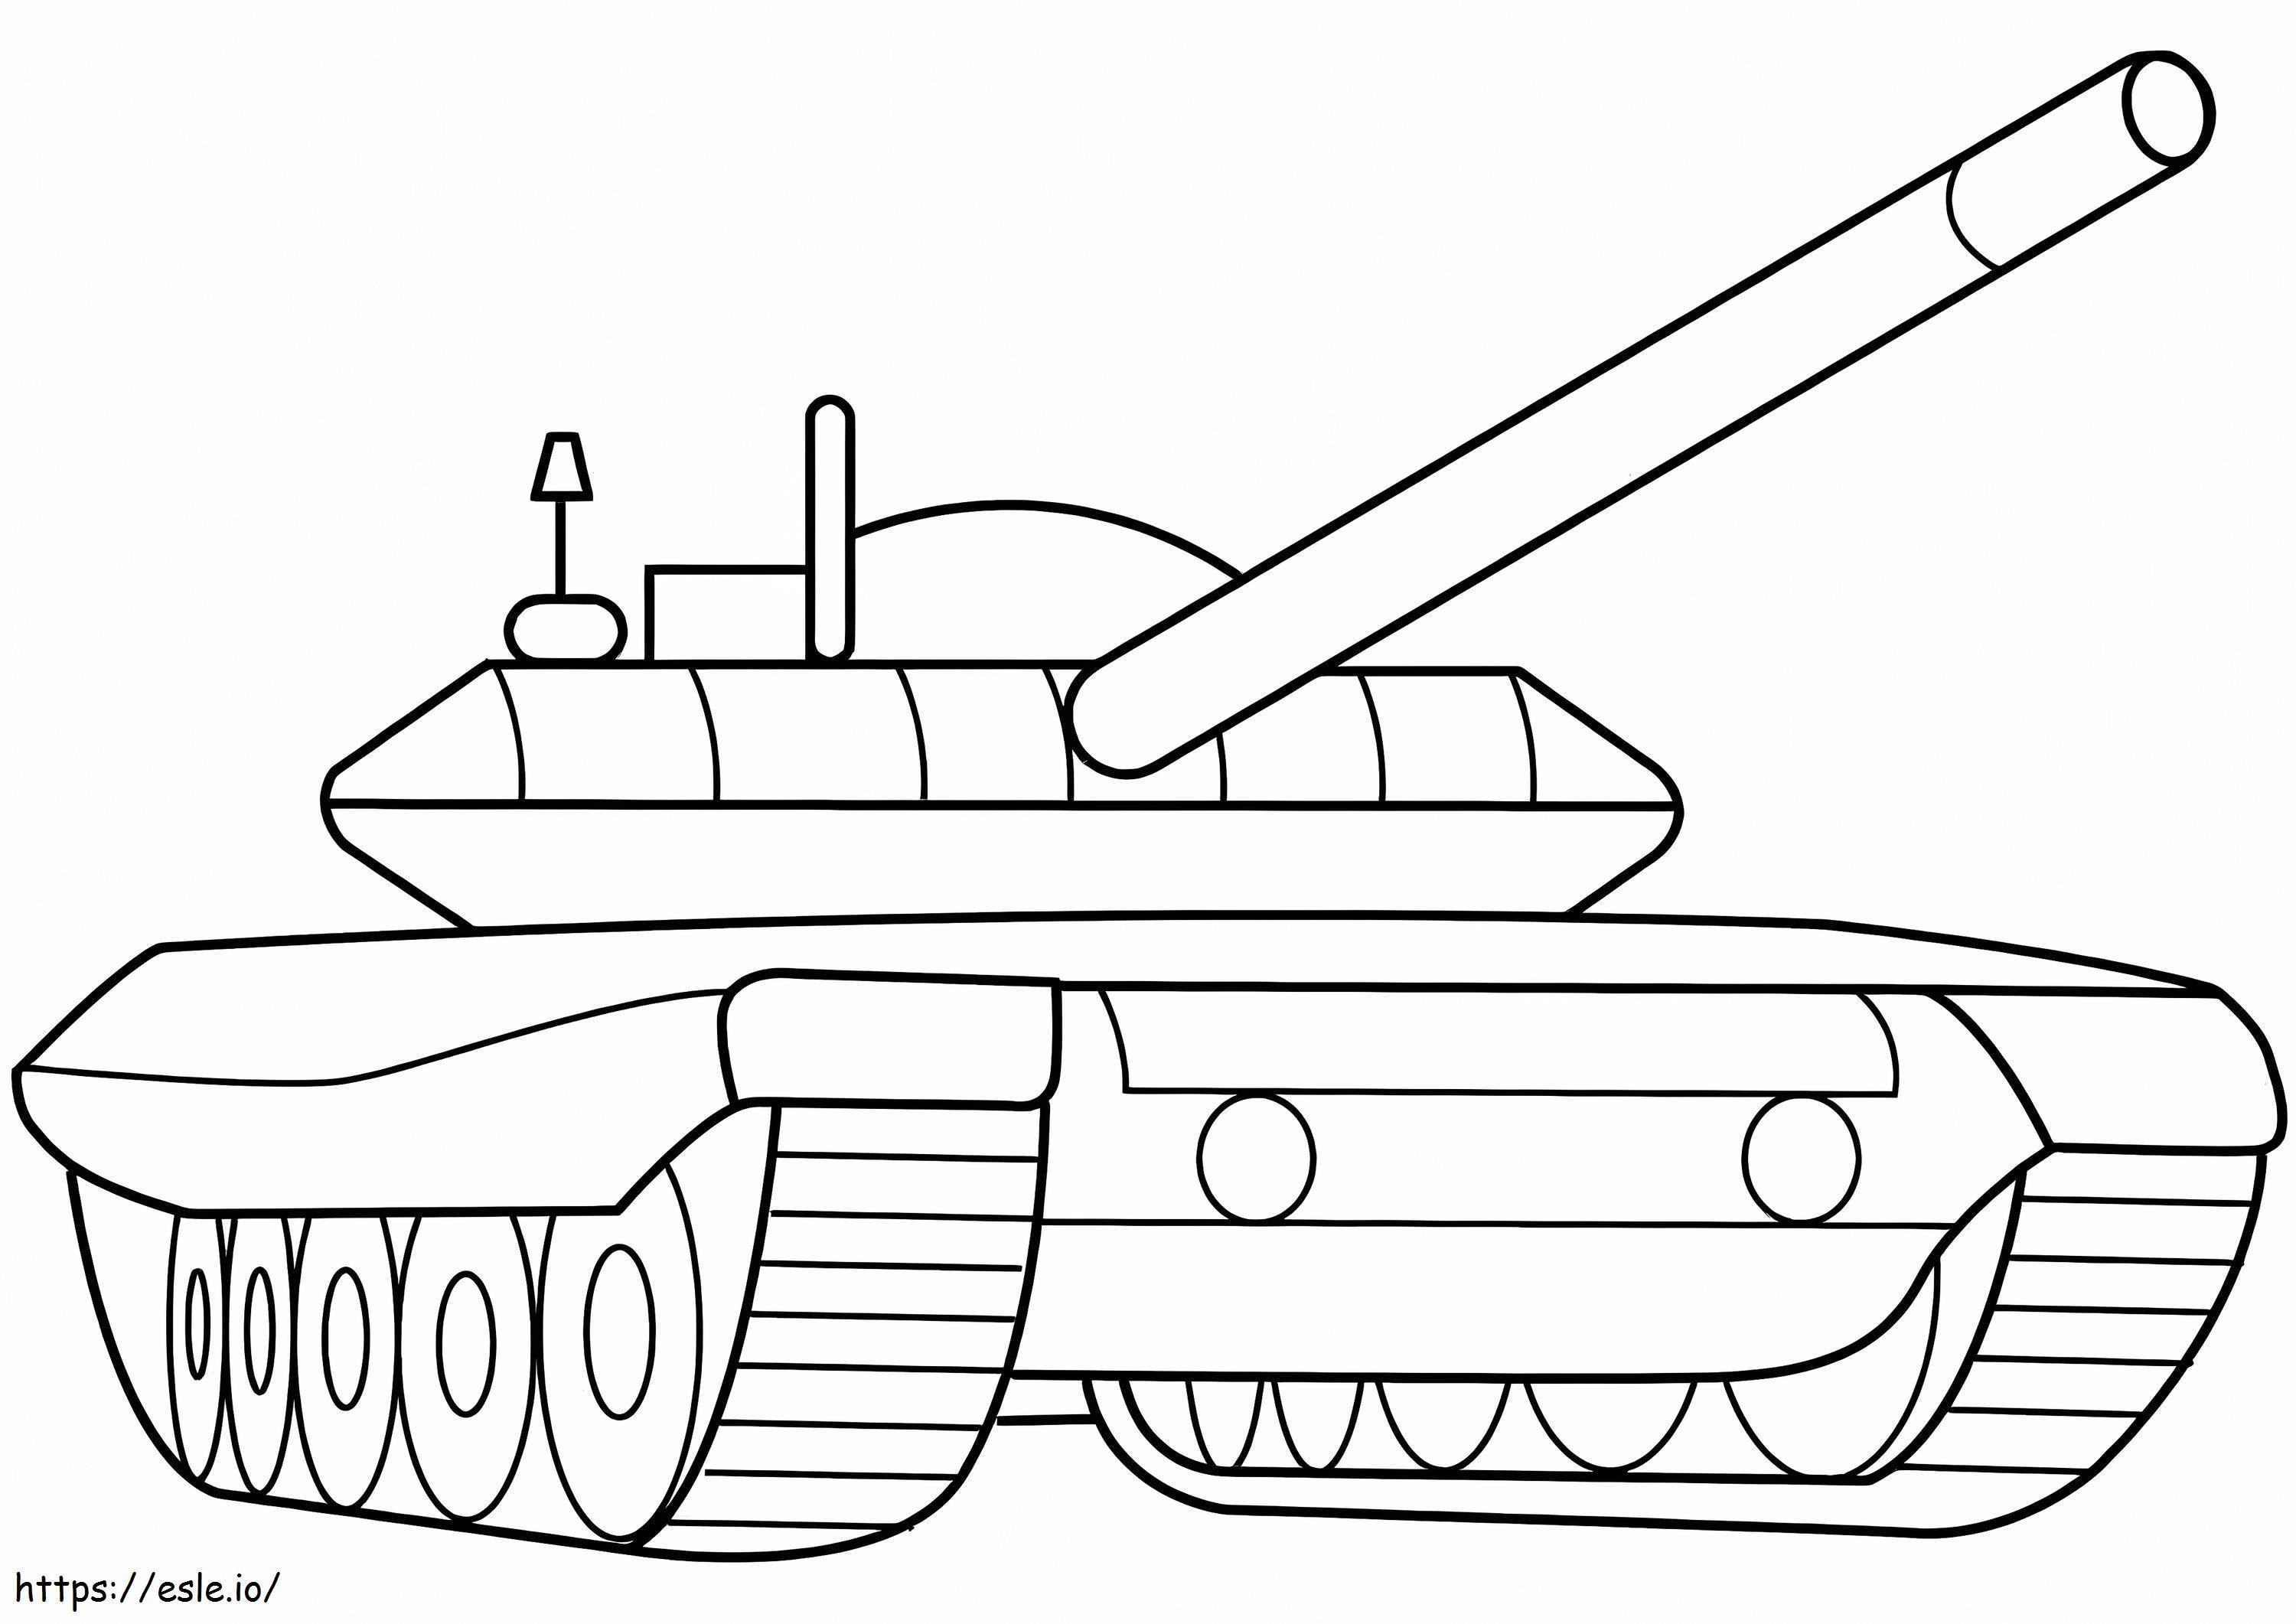 Askeri Zırhlı Tank boyama